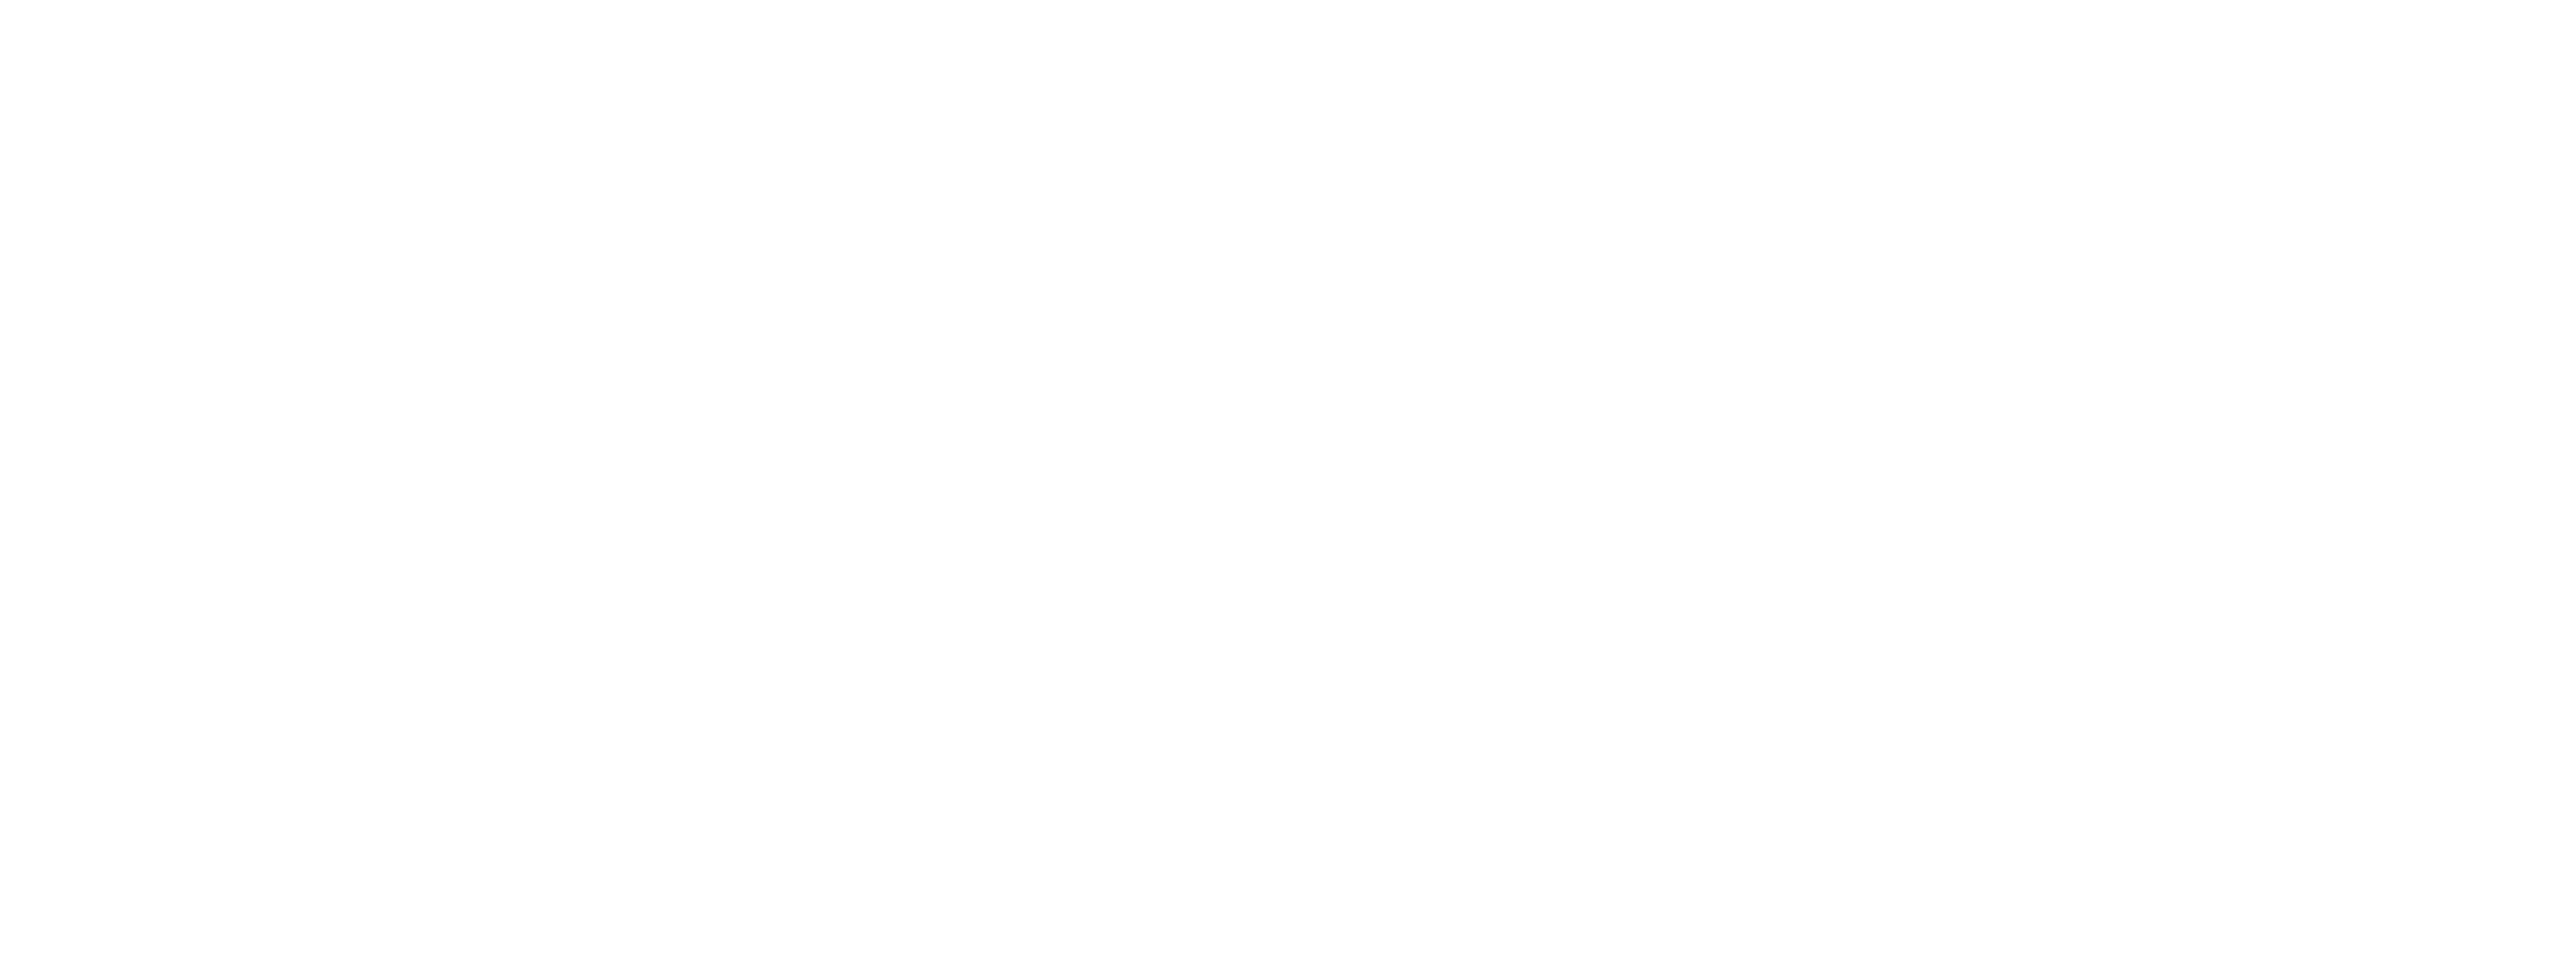 Nikola_Motor_Company_logo